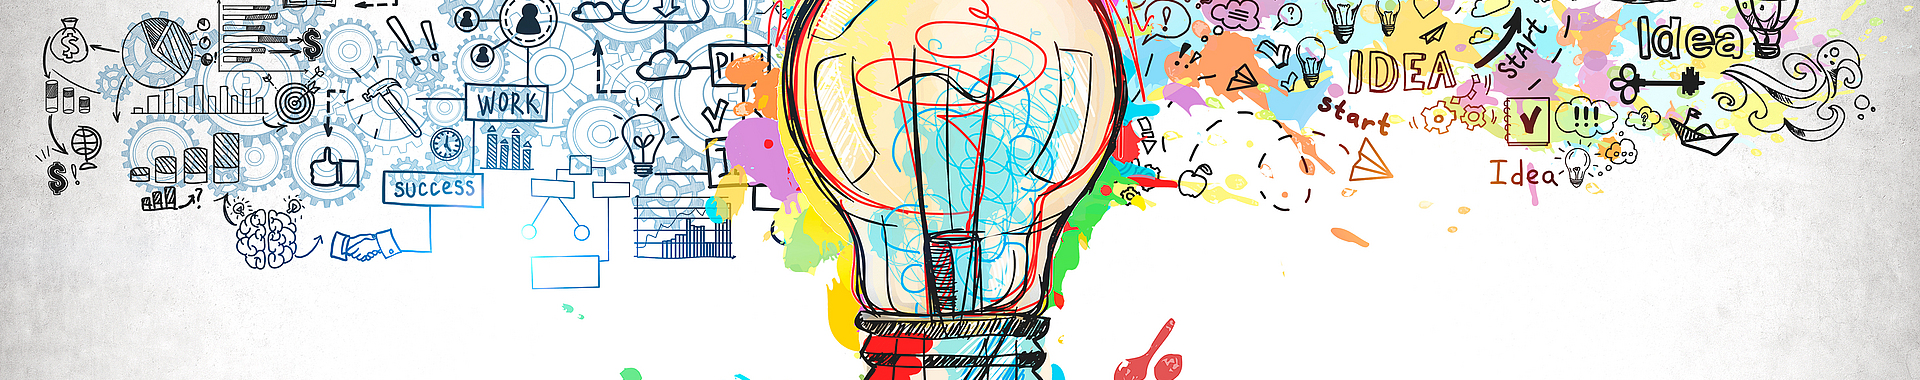 Illustrierte Glühbirne im Zentrum des Bildes als Symbol für eine Idee. Von ihr gehen viele kleinere illustrierte Ideenbilder aus.